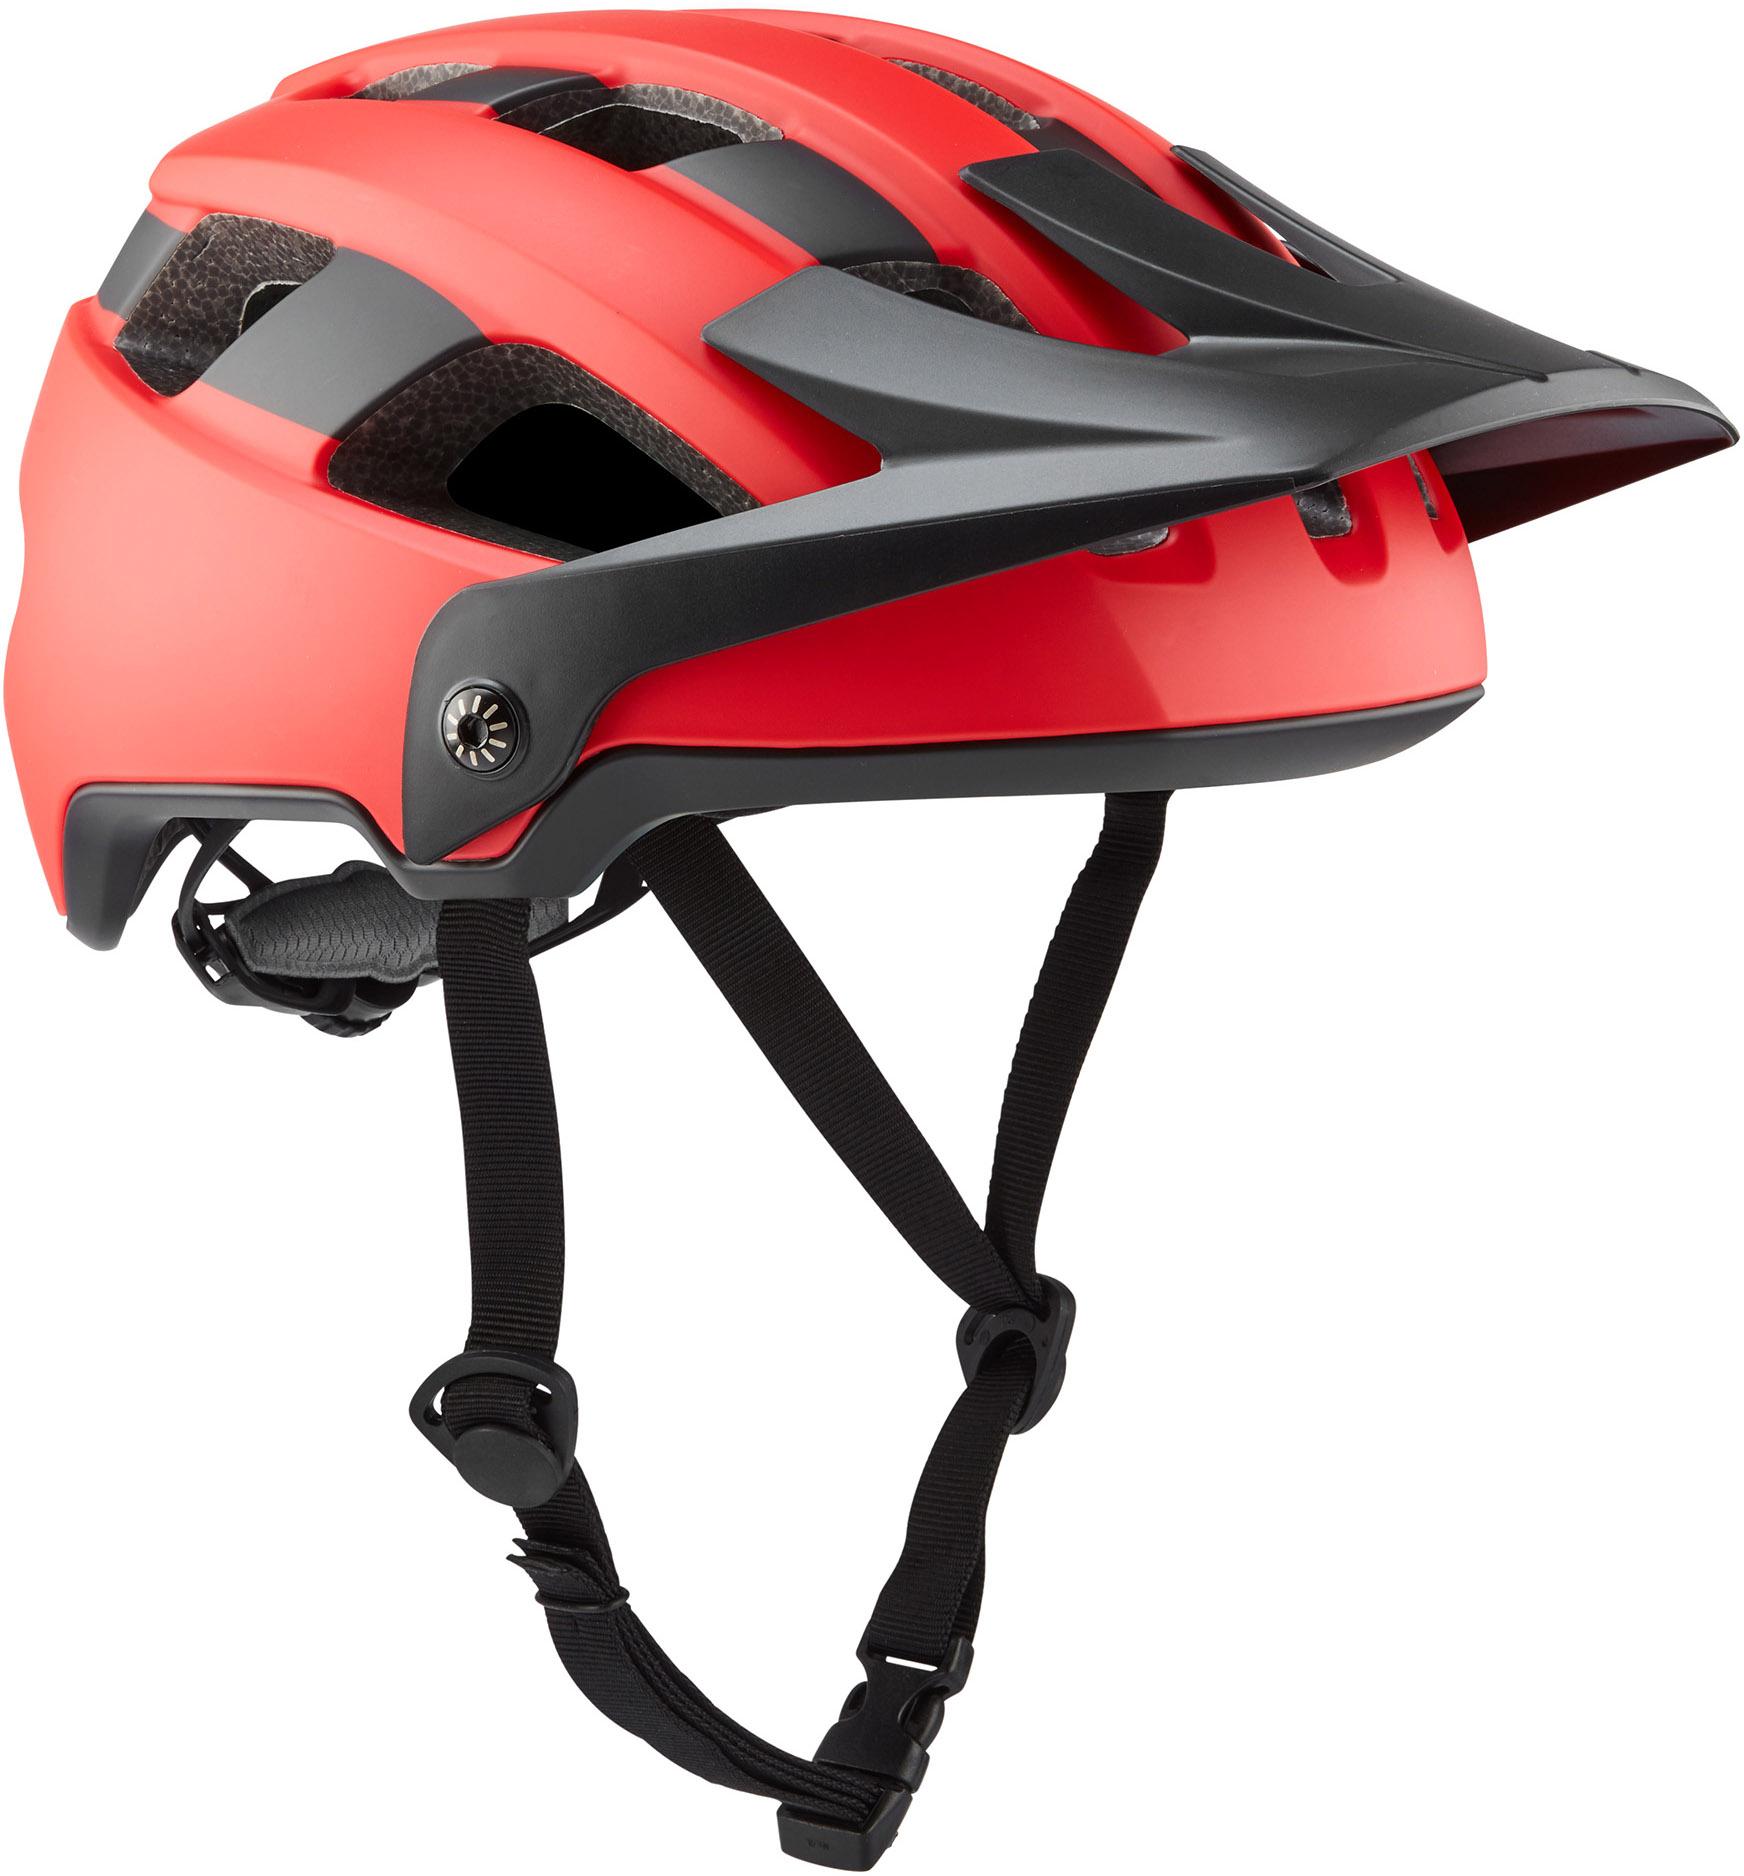 Brand-x Eh1 Enduro Mtb Cycling Helmet  Red/black